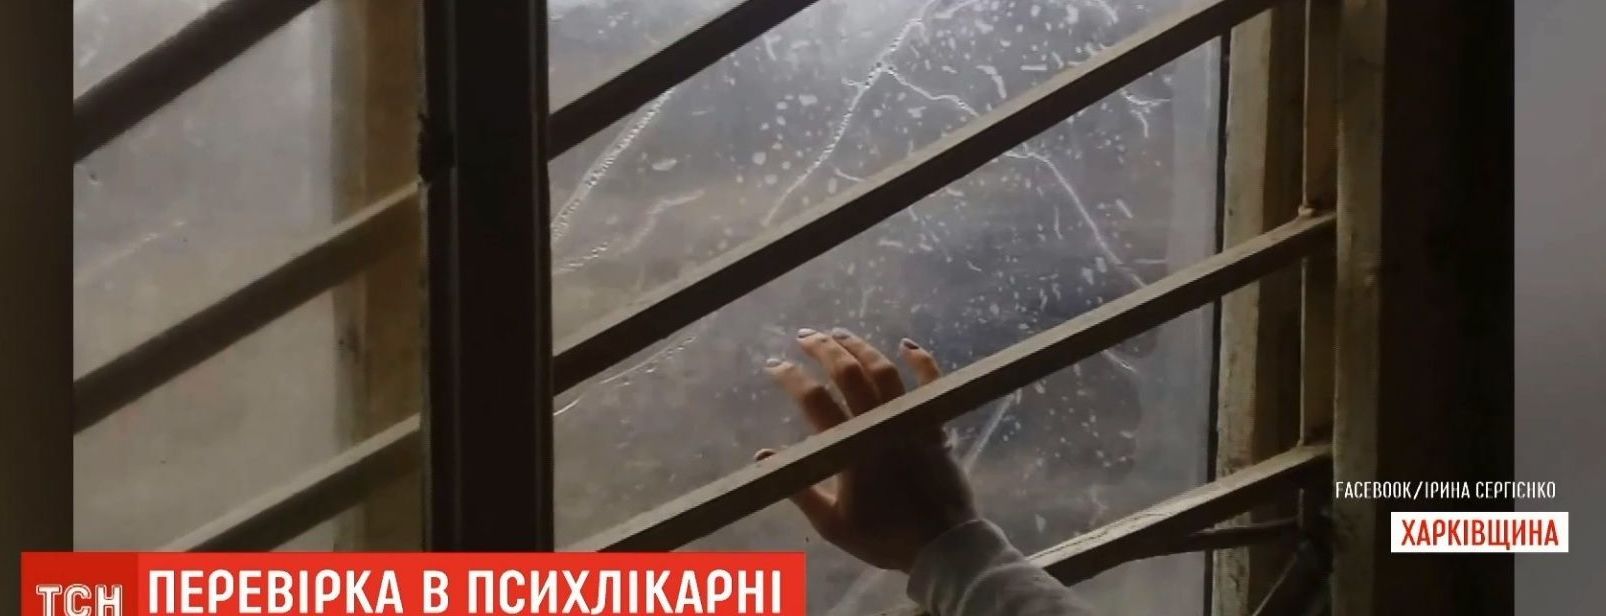 Руководителя скандальной психбольницы на Харьковщине отстранили от работы